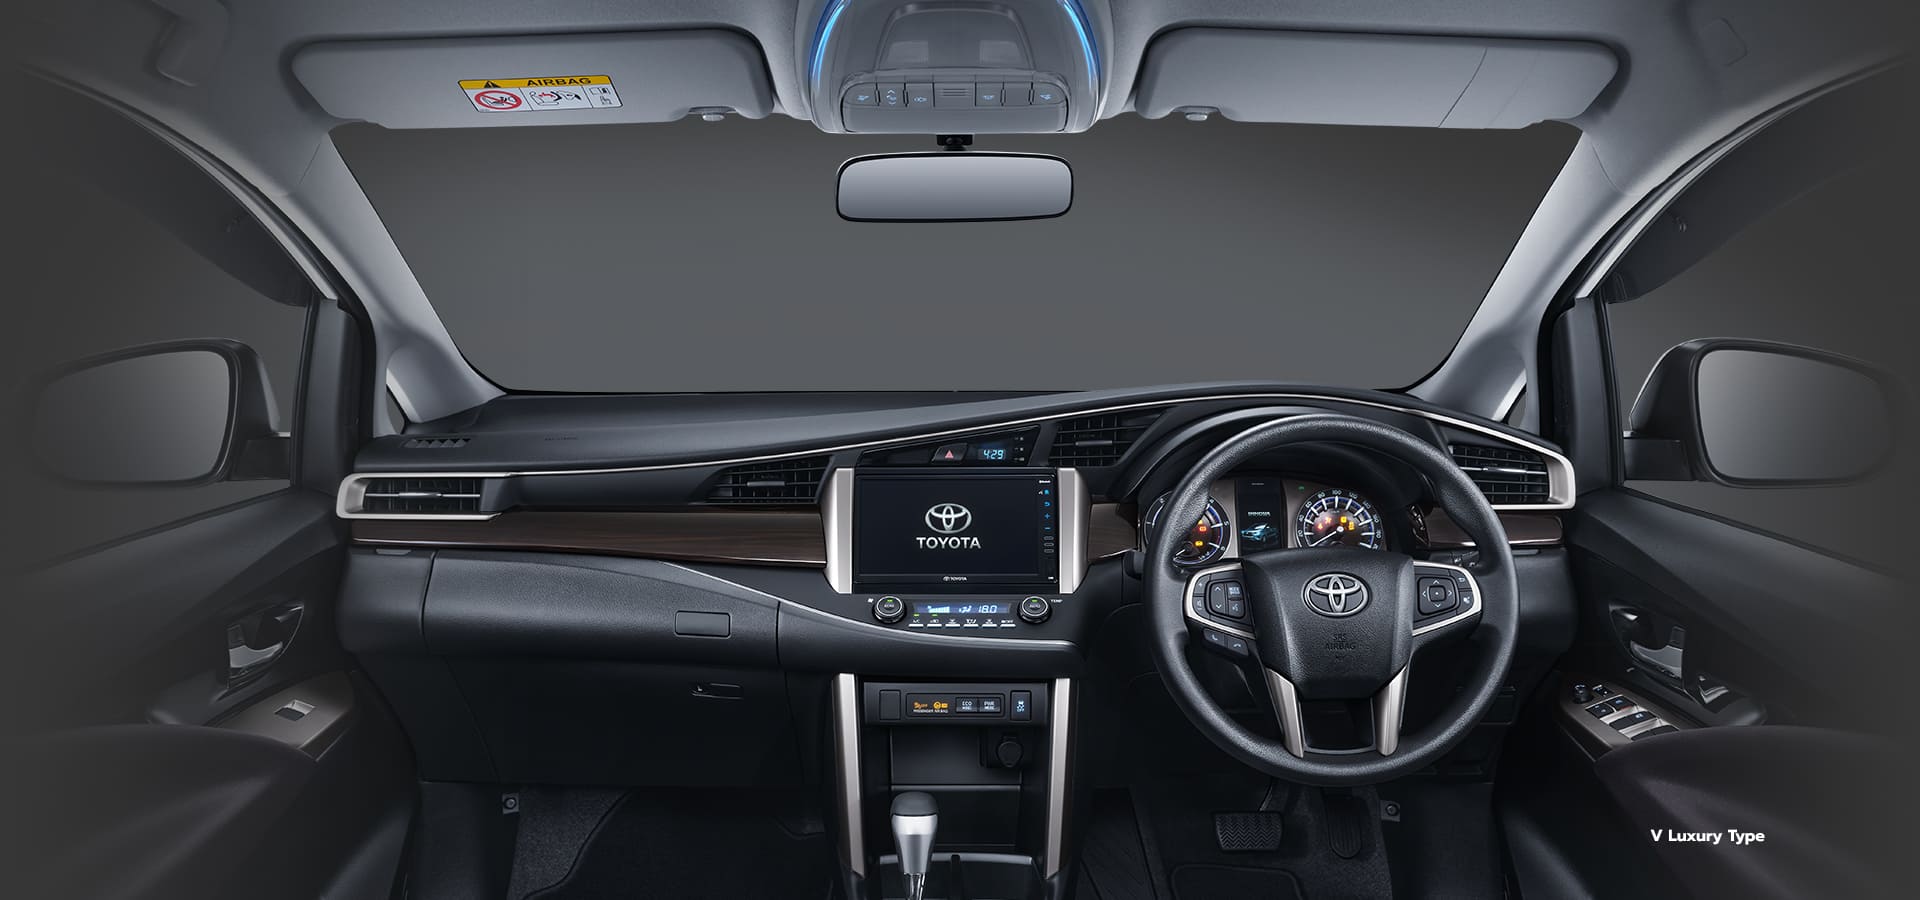 Harga Toyota Innova, Mobil Keluarga untuk Segala Kebutuhan | Leyla Hana